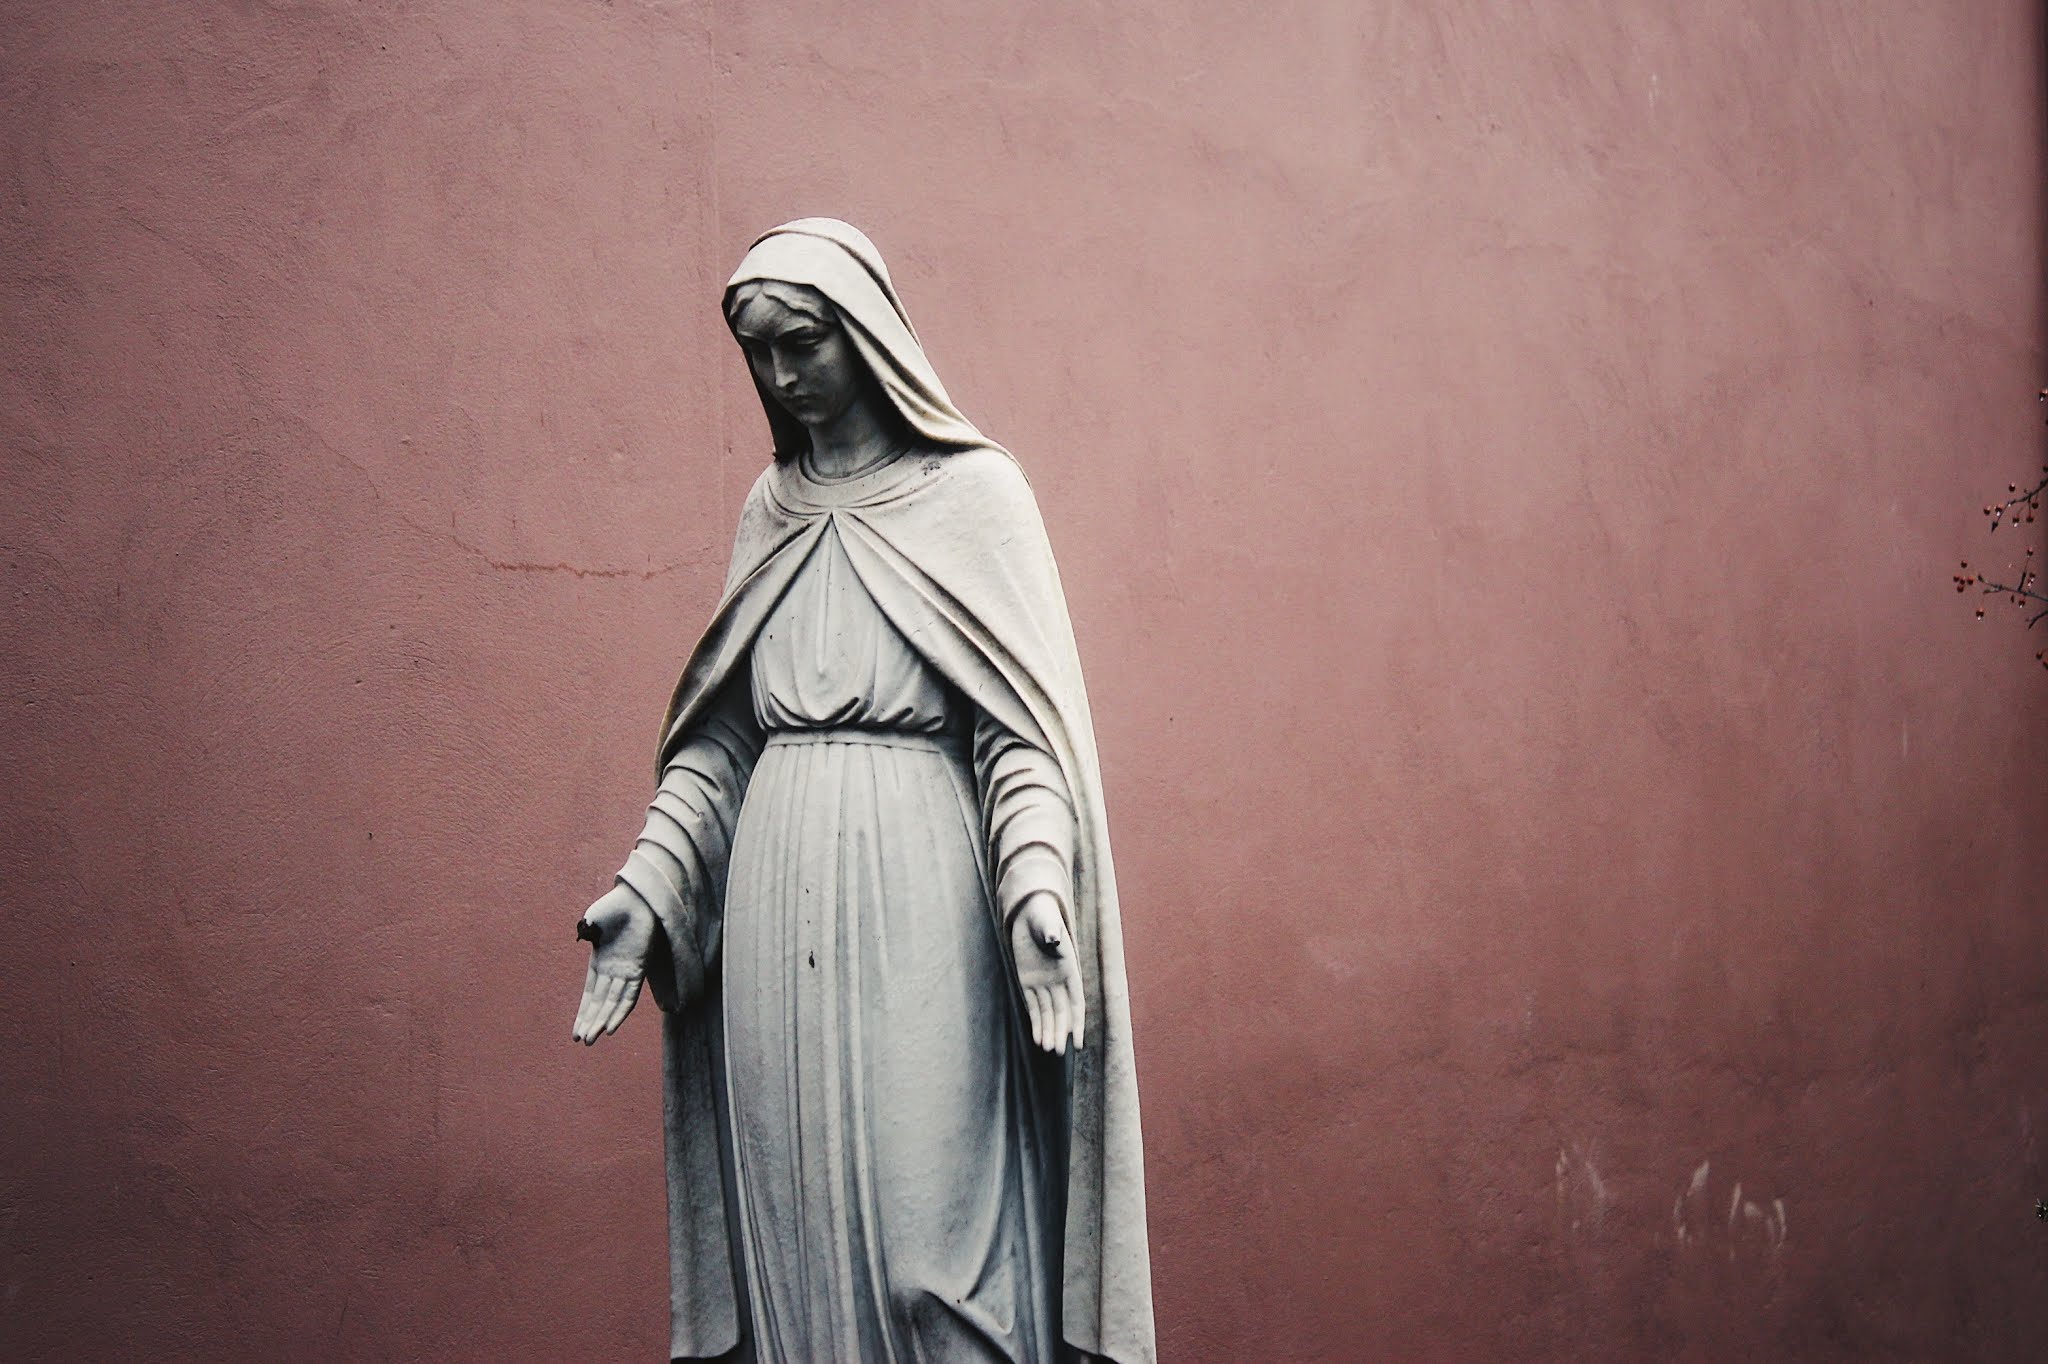 Reze a oração Maria passa na frente. Uma das mais fortes e poderosa orações católicas que existem